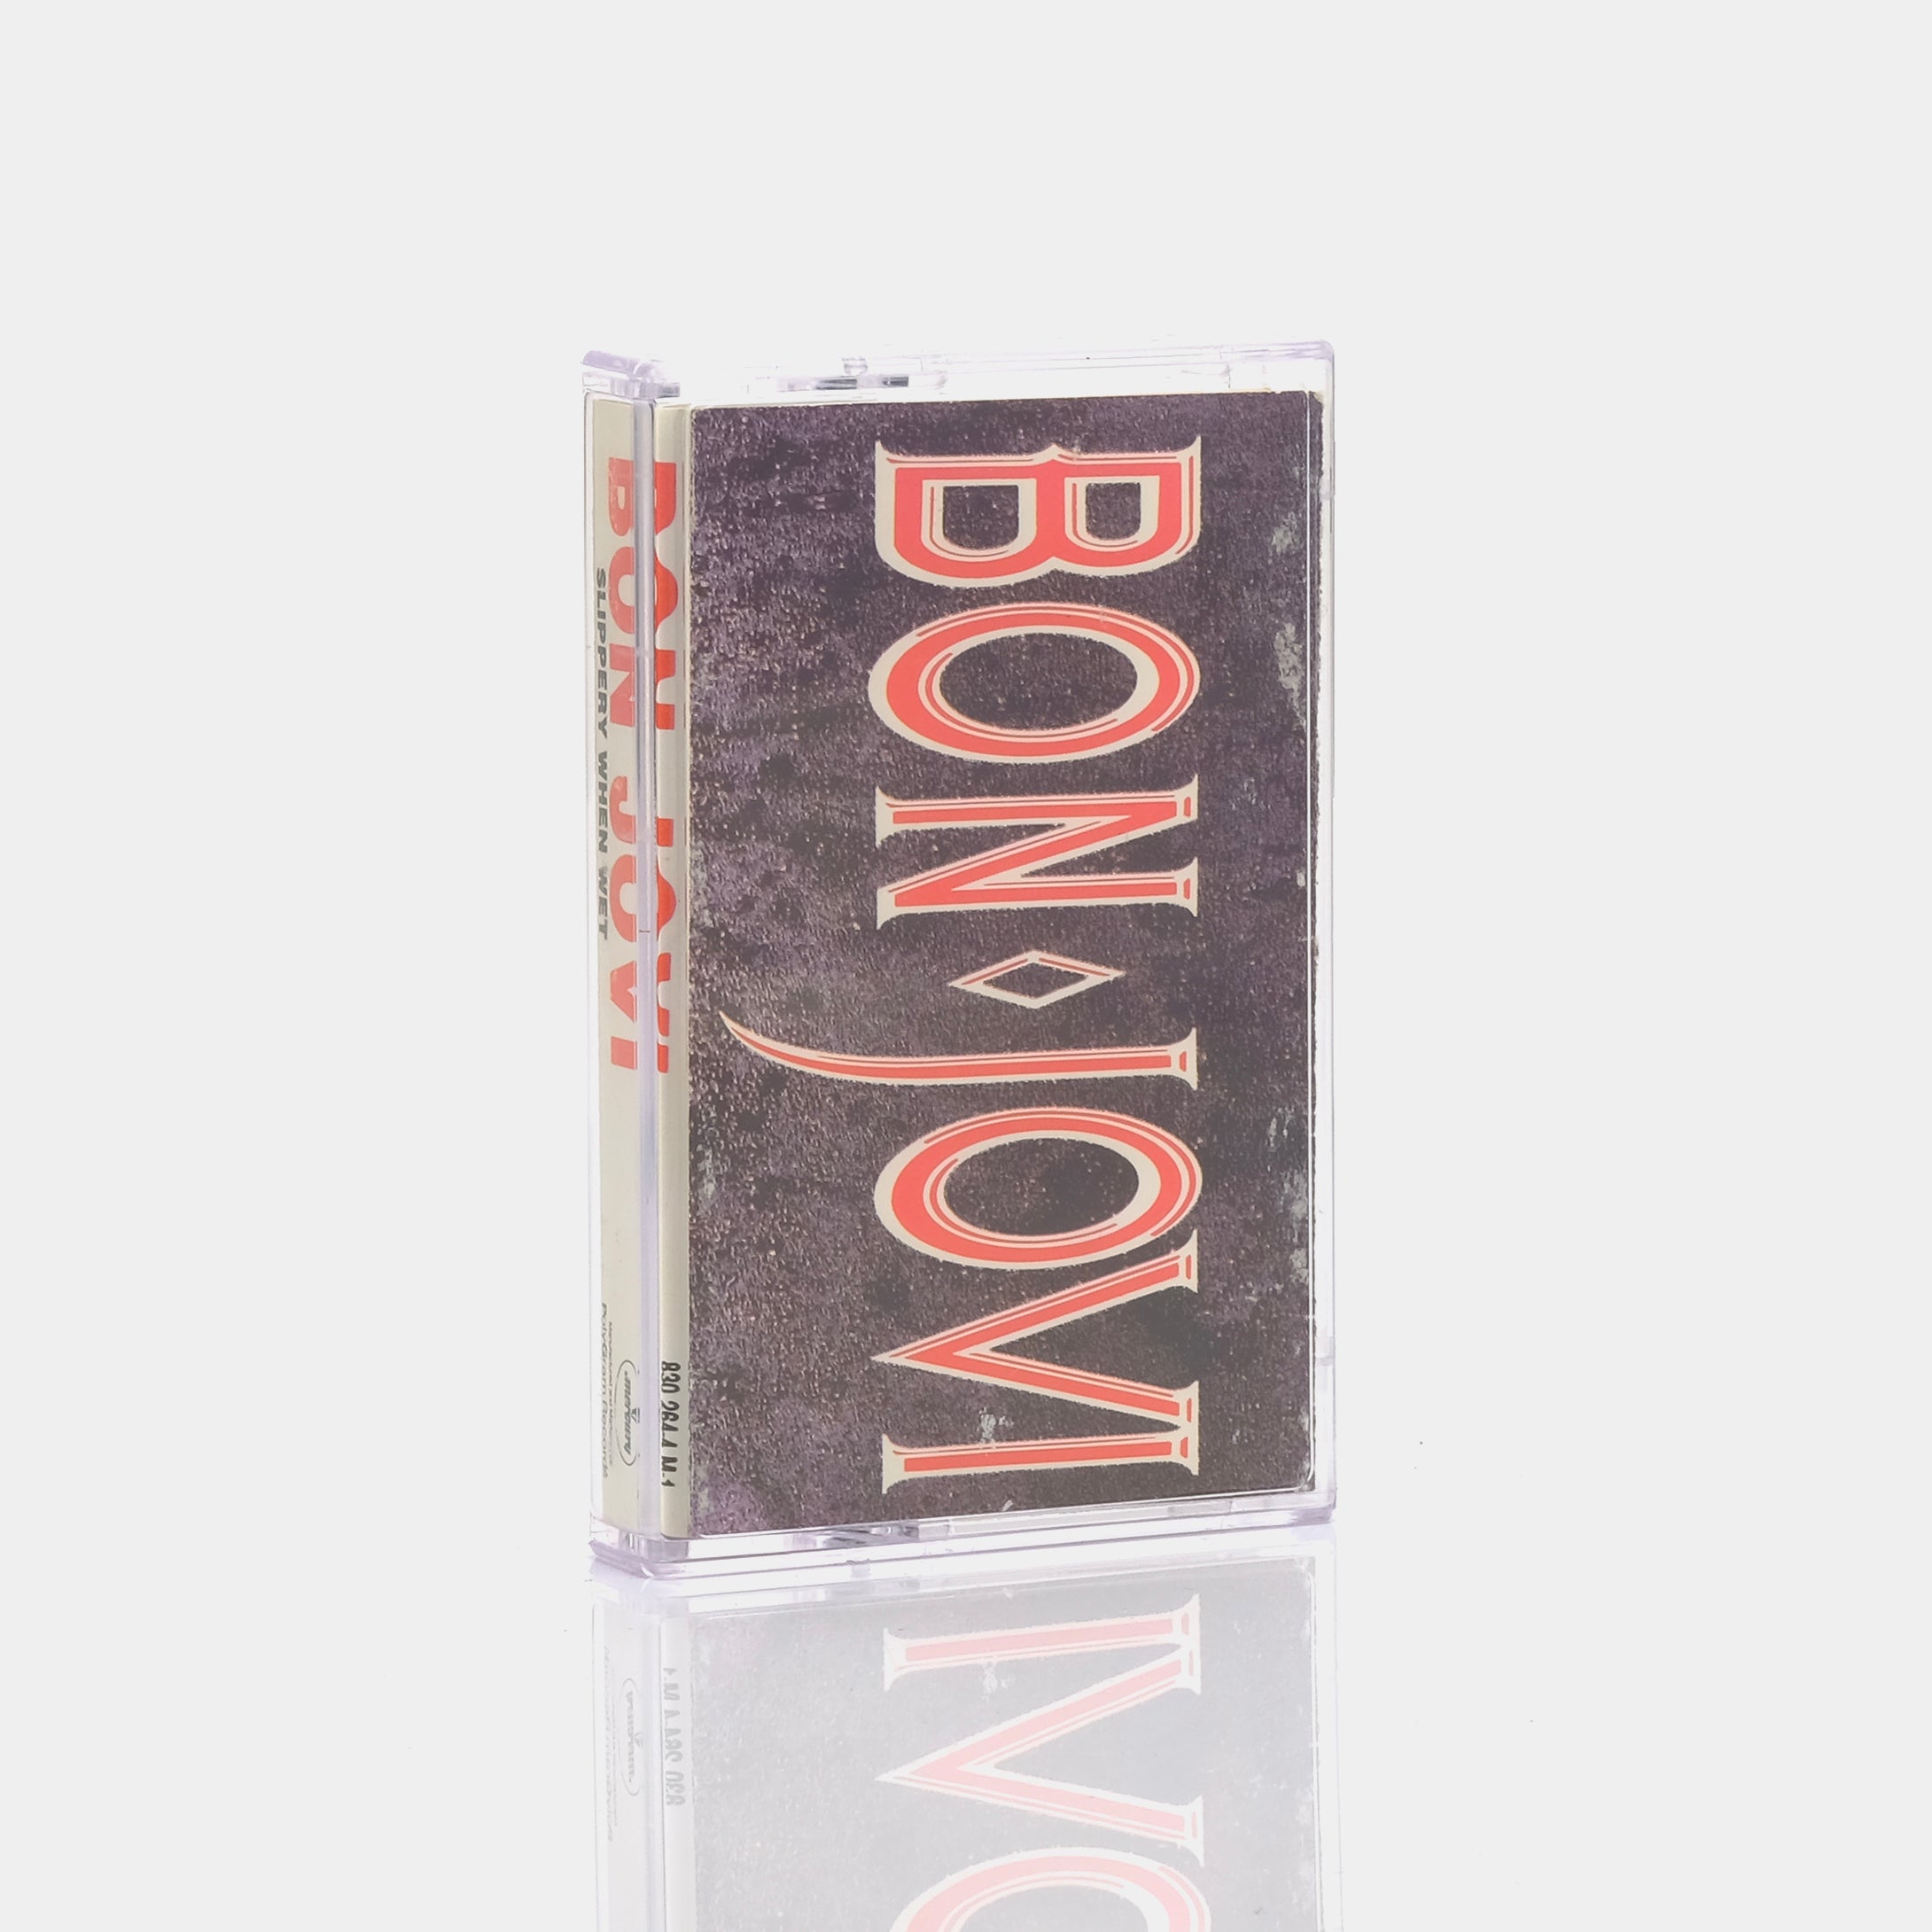 Bon Jovi - Slippery When Wet Cassette Tape